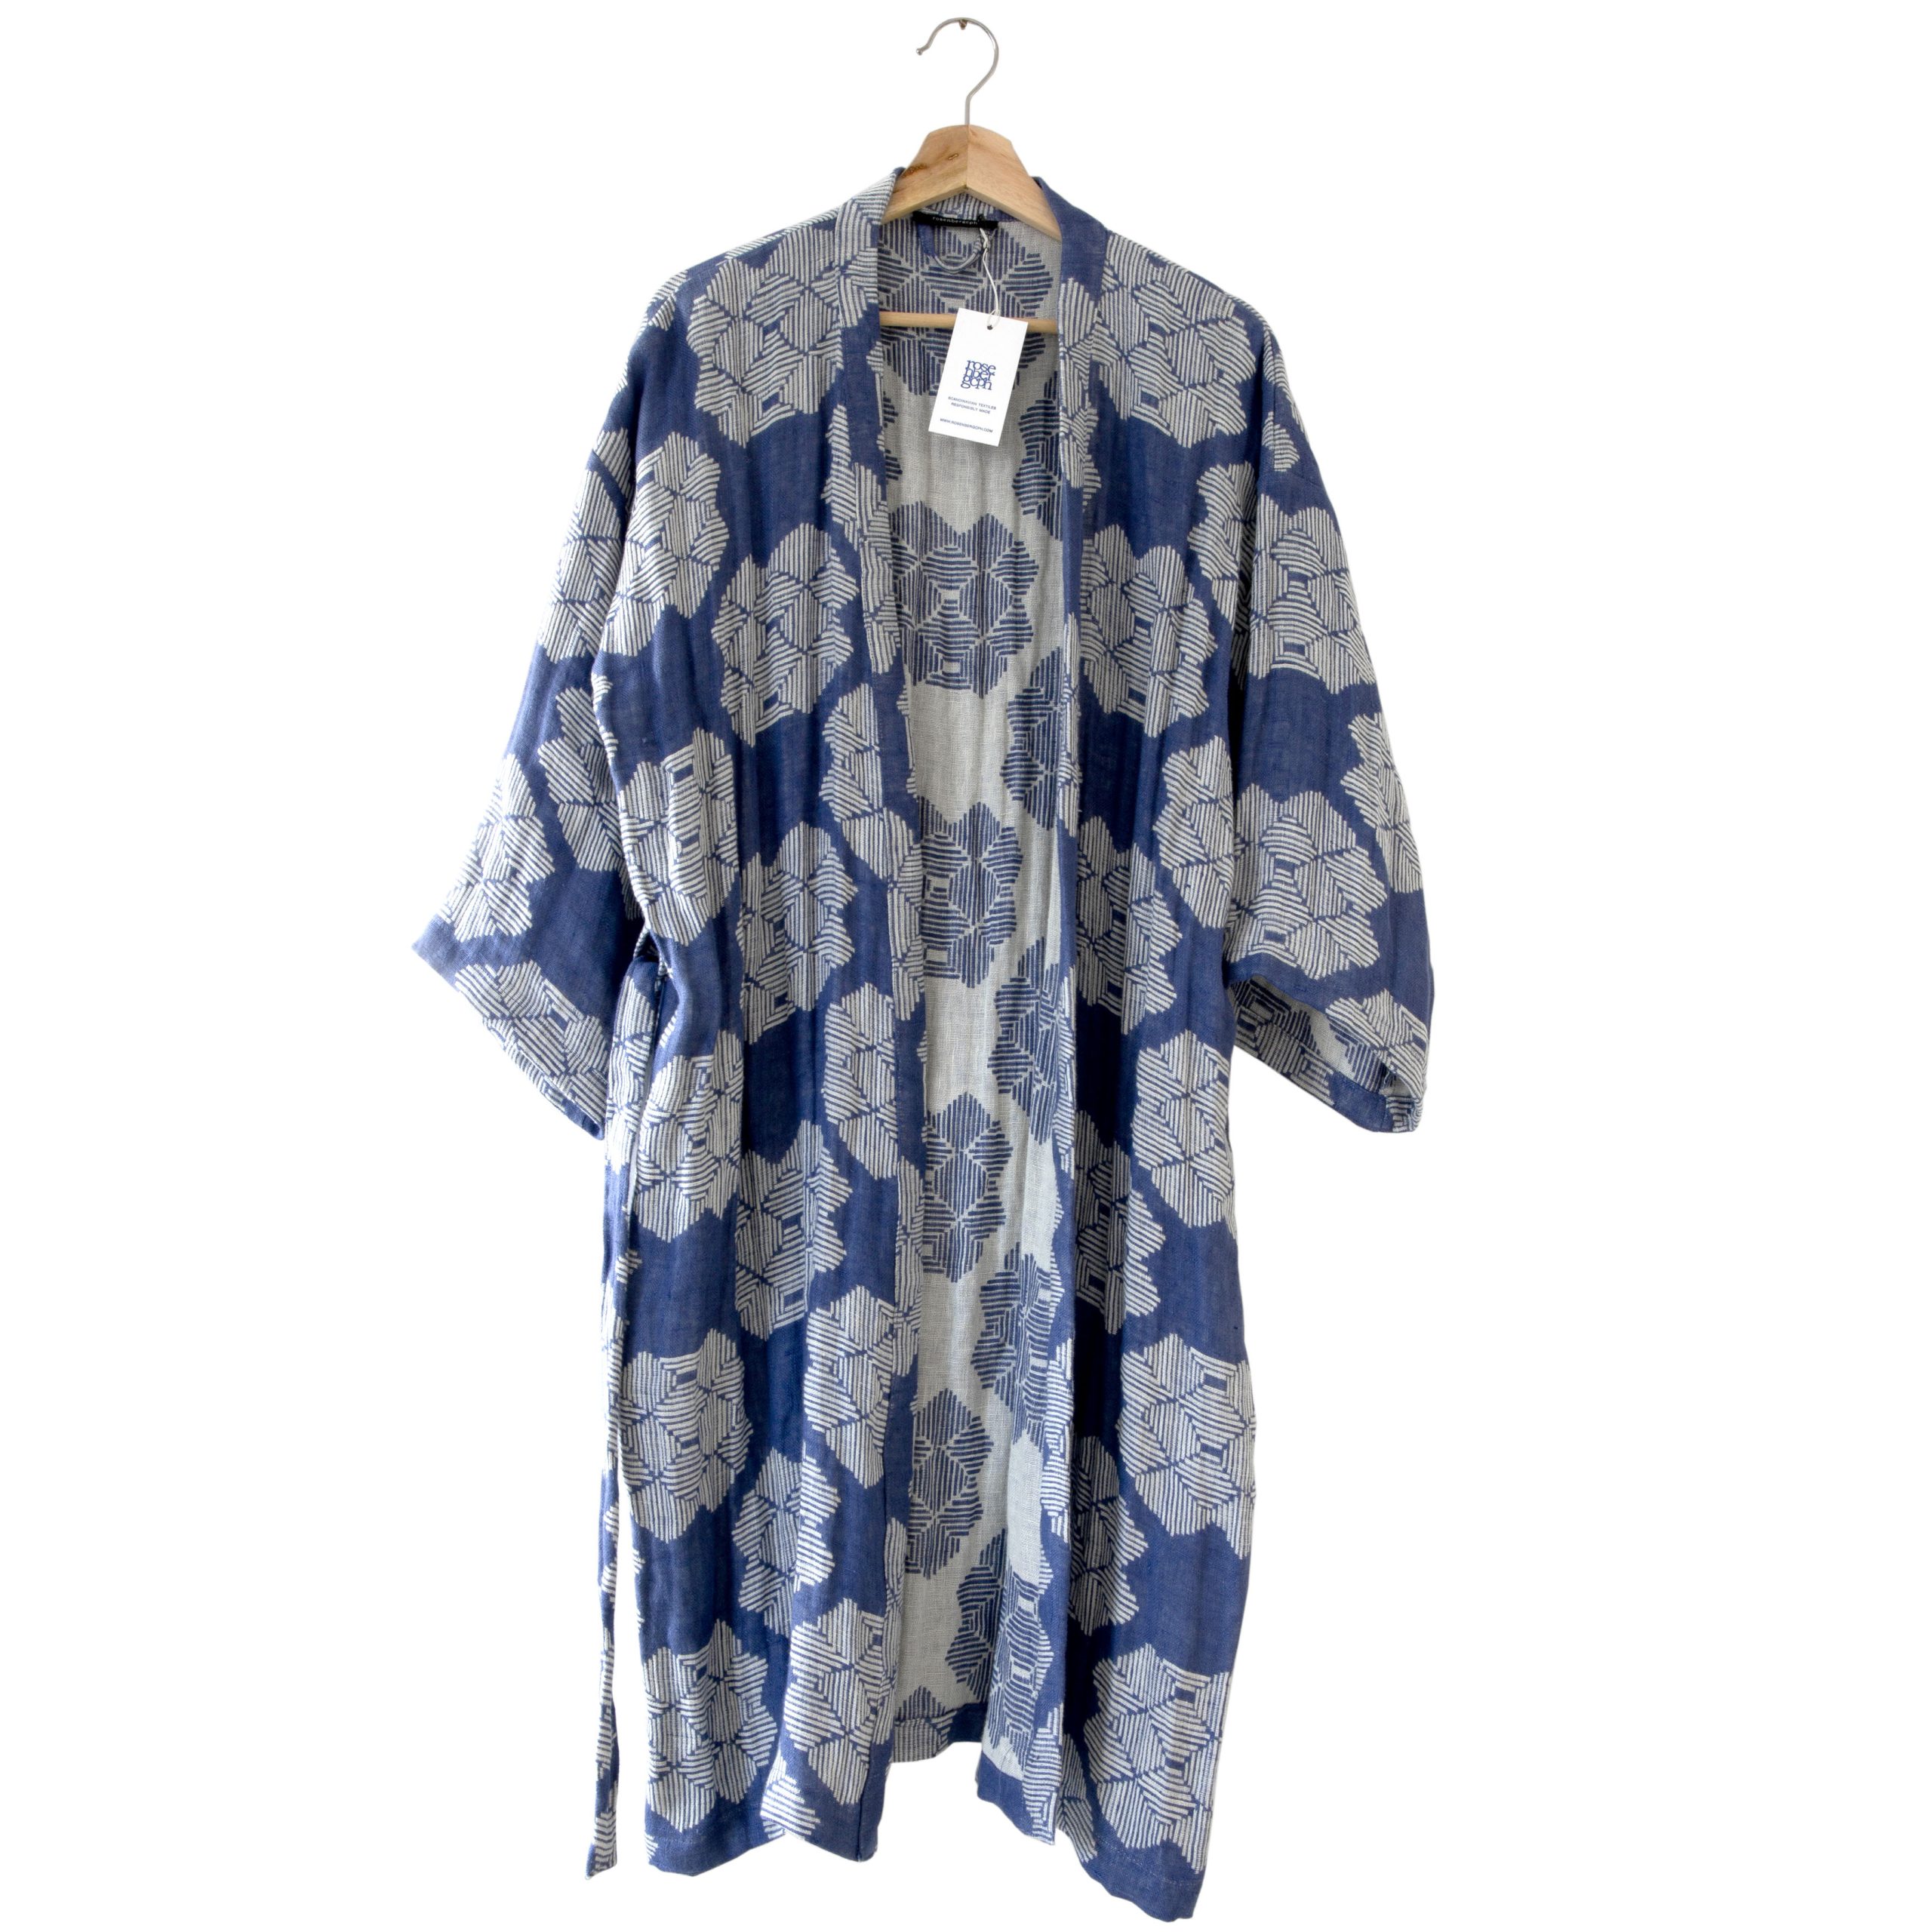 Kimono bathrobe, Desert roses blue, pure linen, design by Anne Rosenberg, RosenbergCph